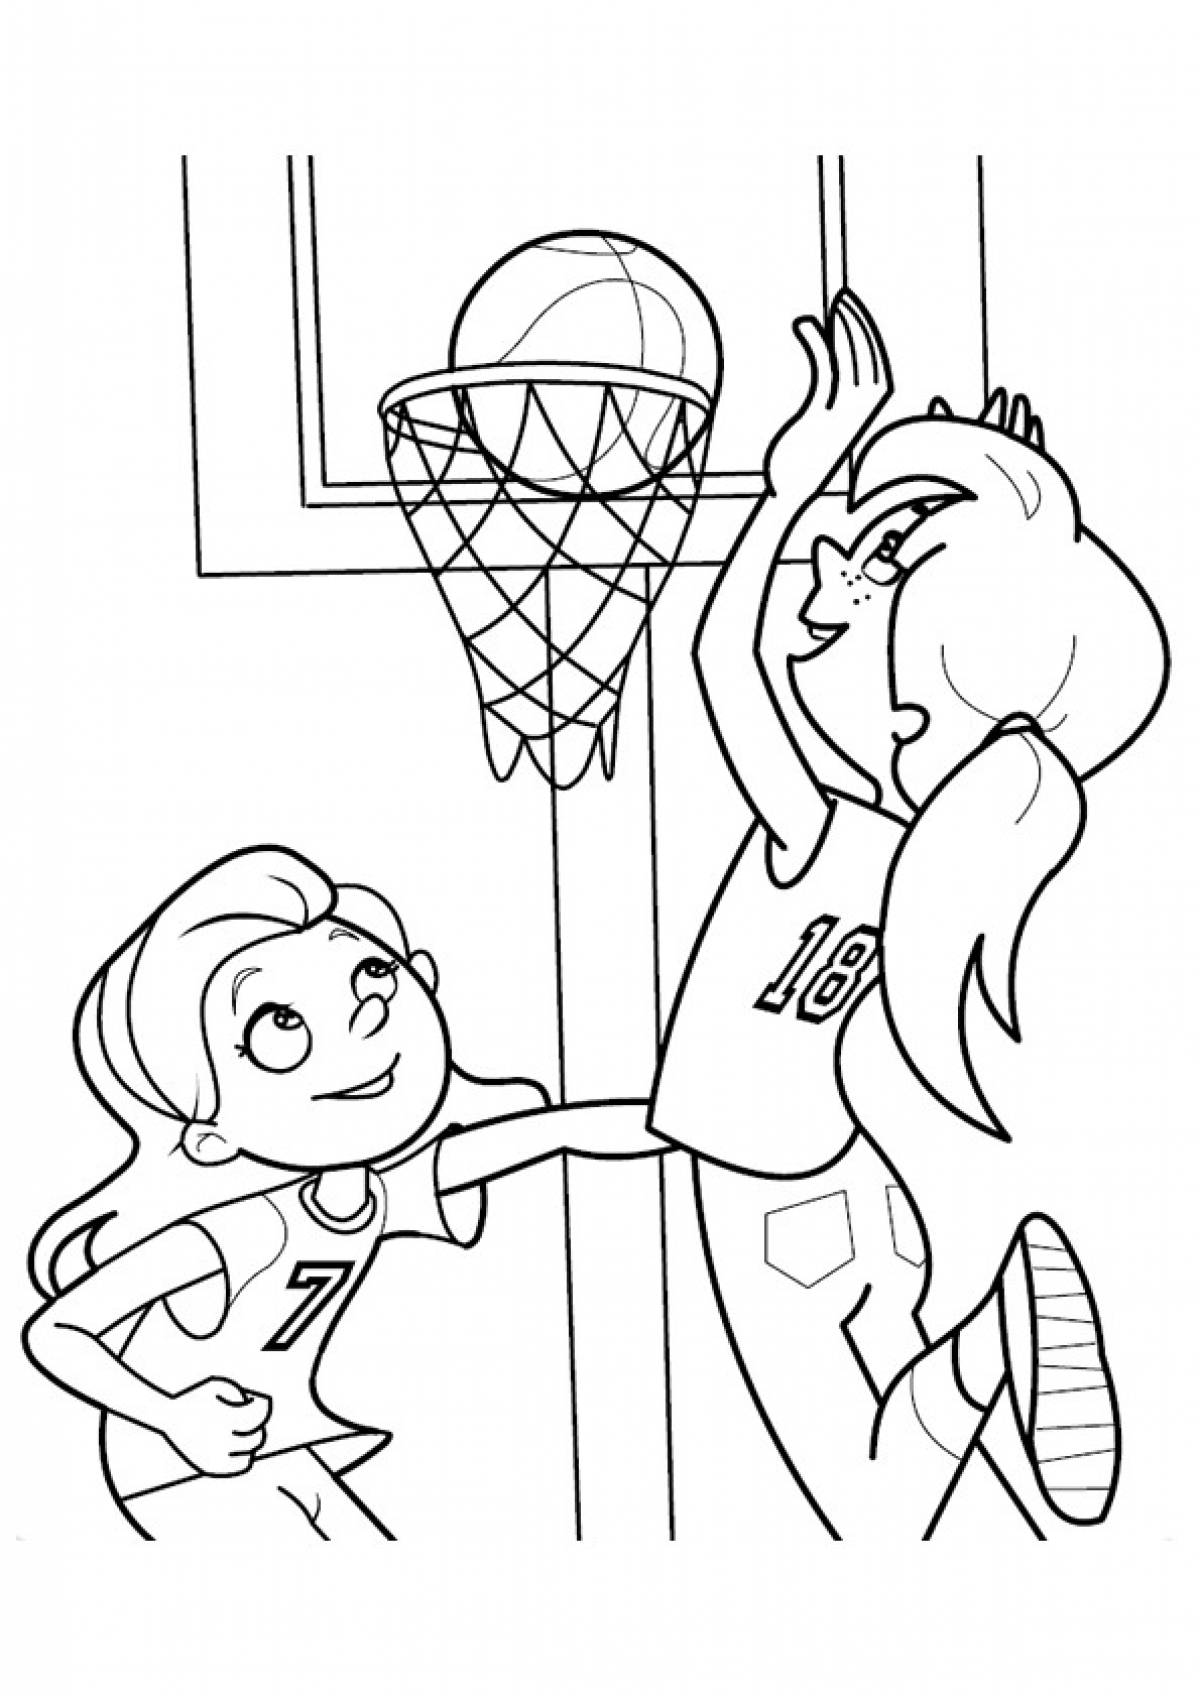 Girls and basketball